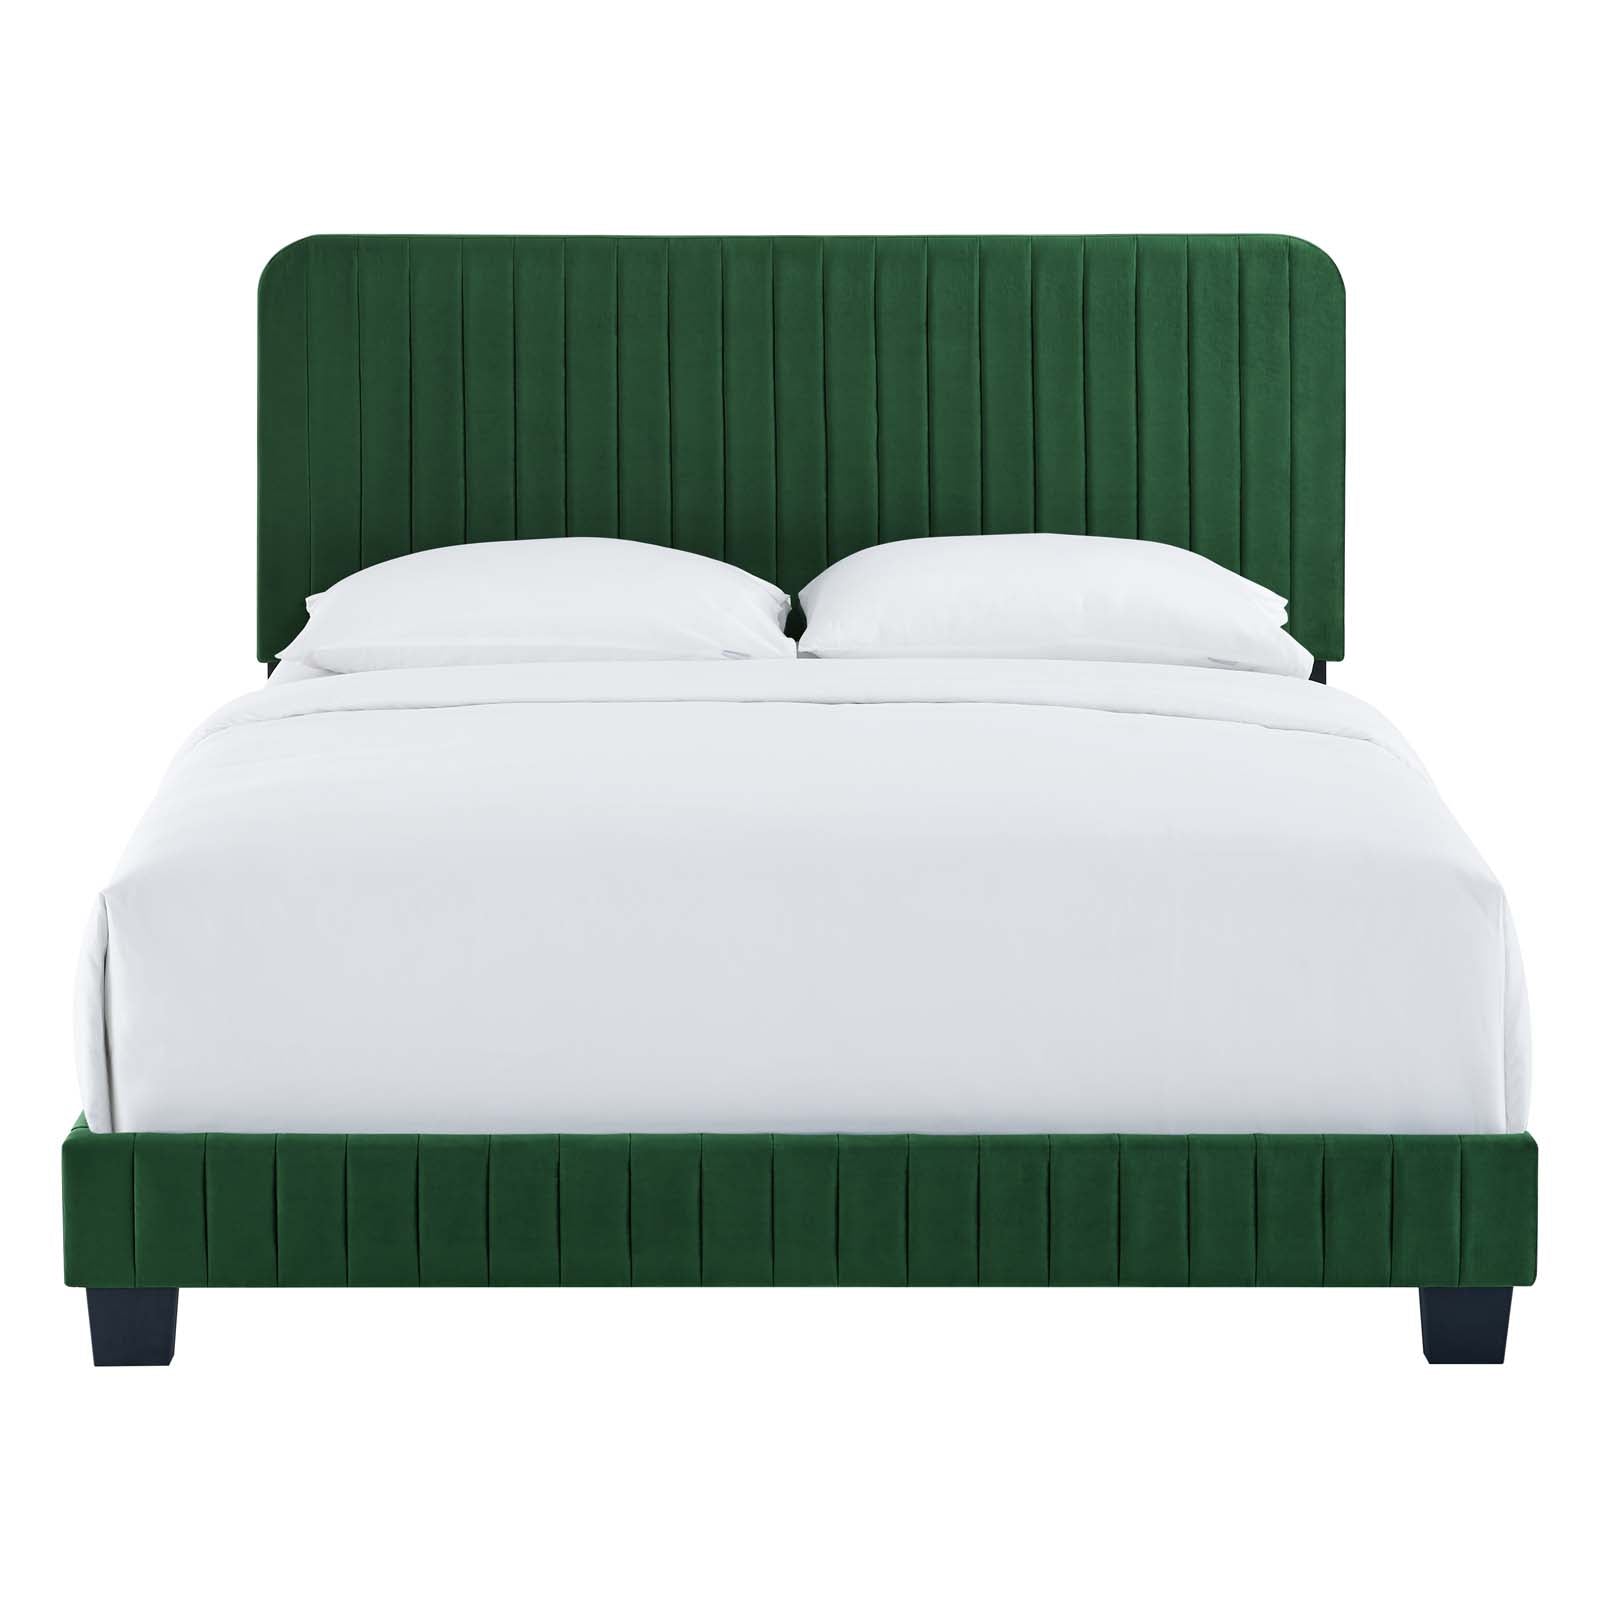 Modway Beds - Celine Channel Tufted Performance Velvet King Bed Emerald